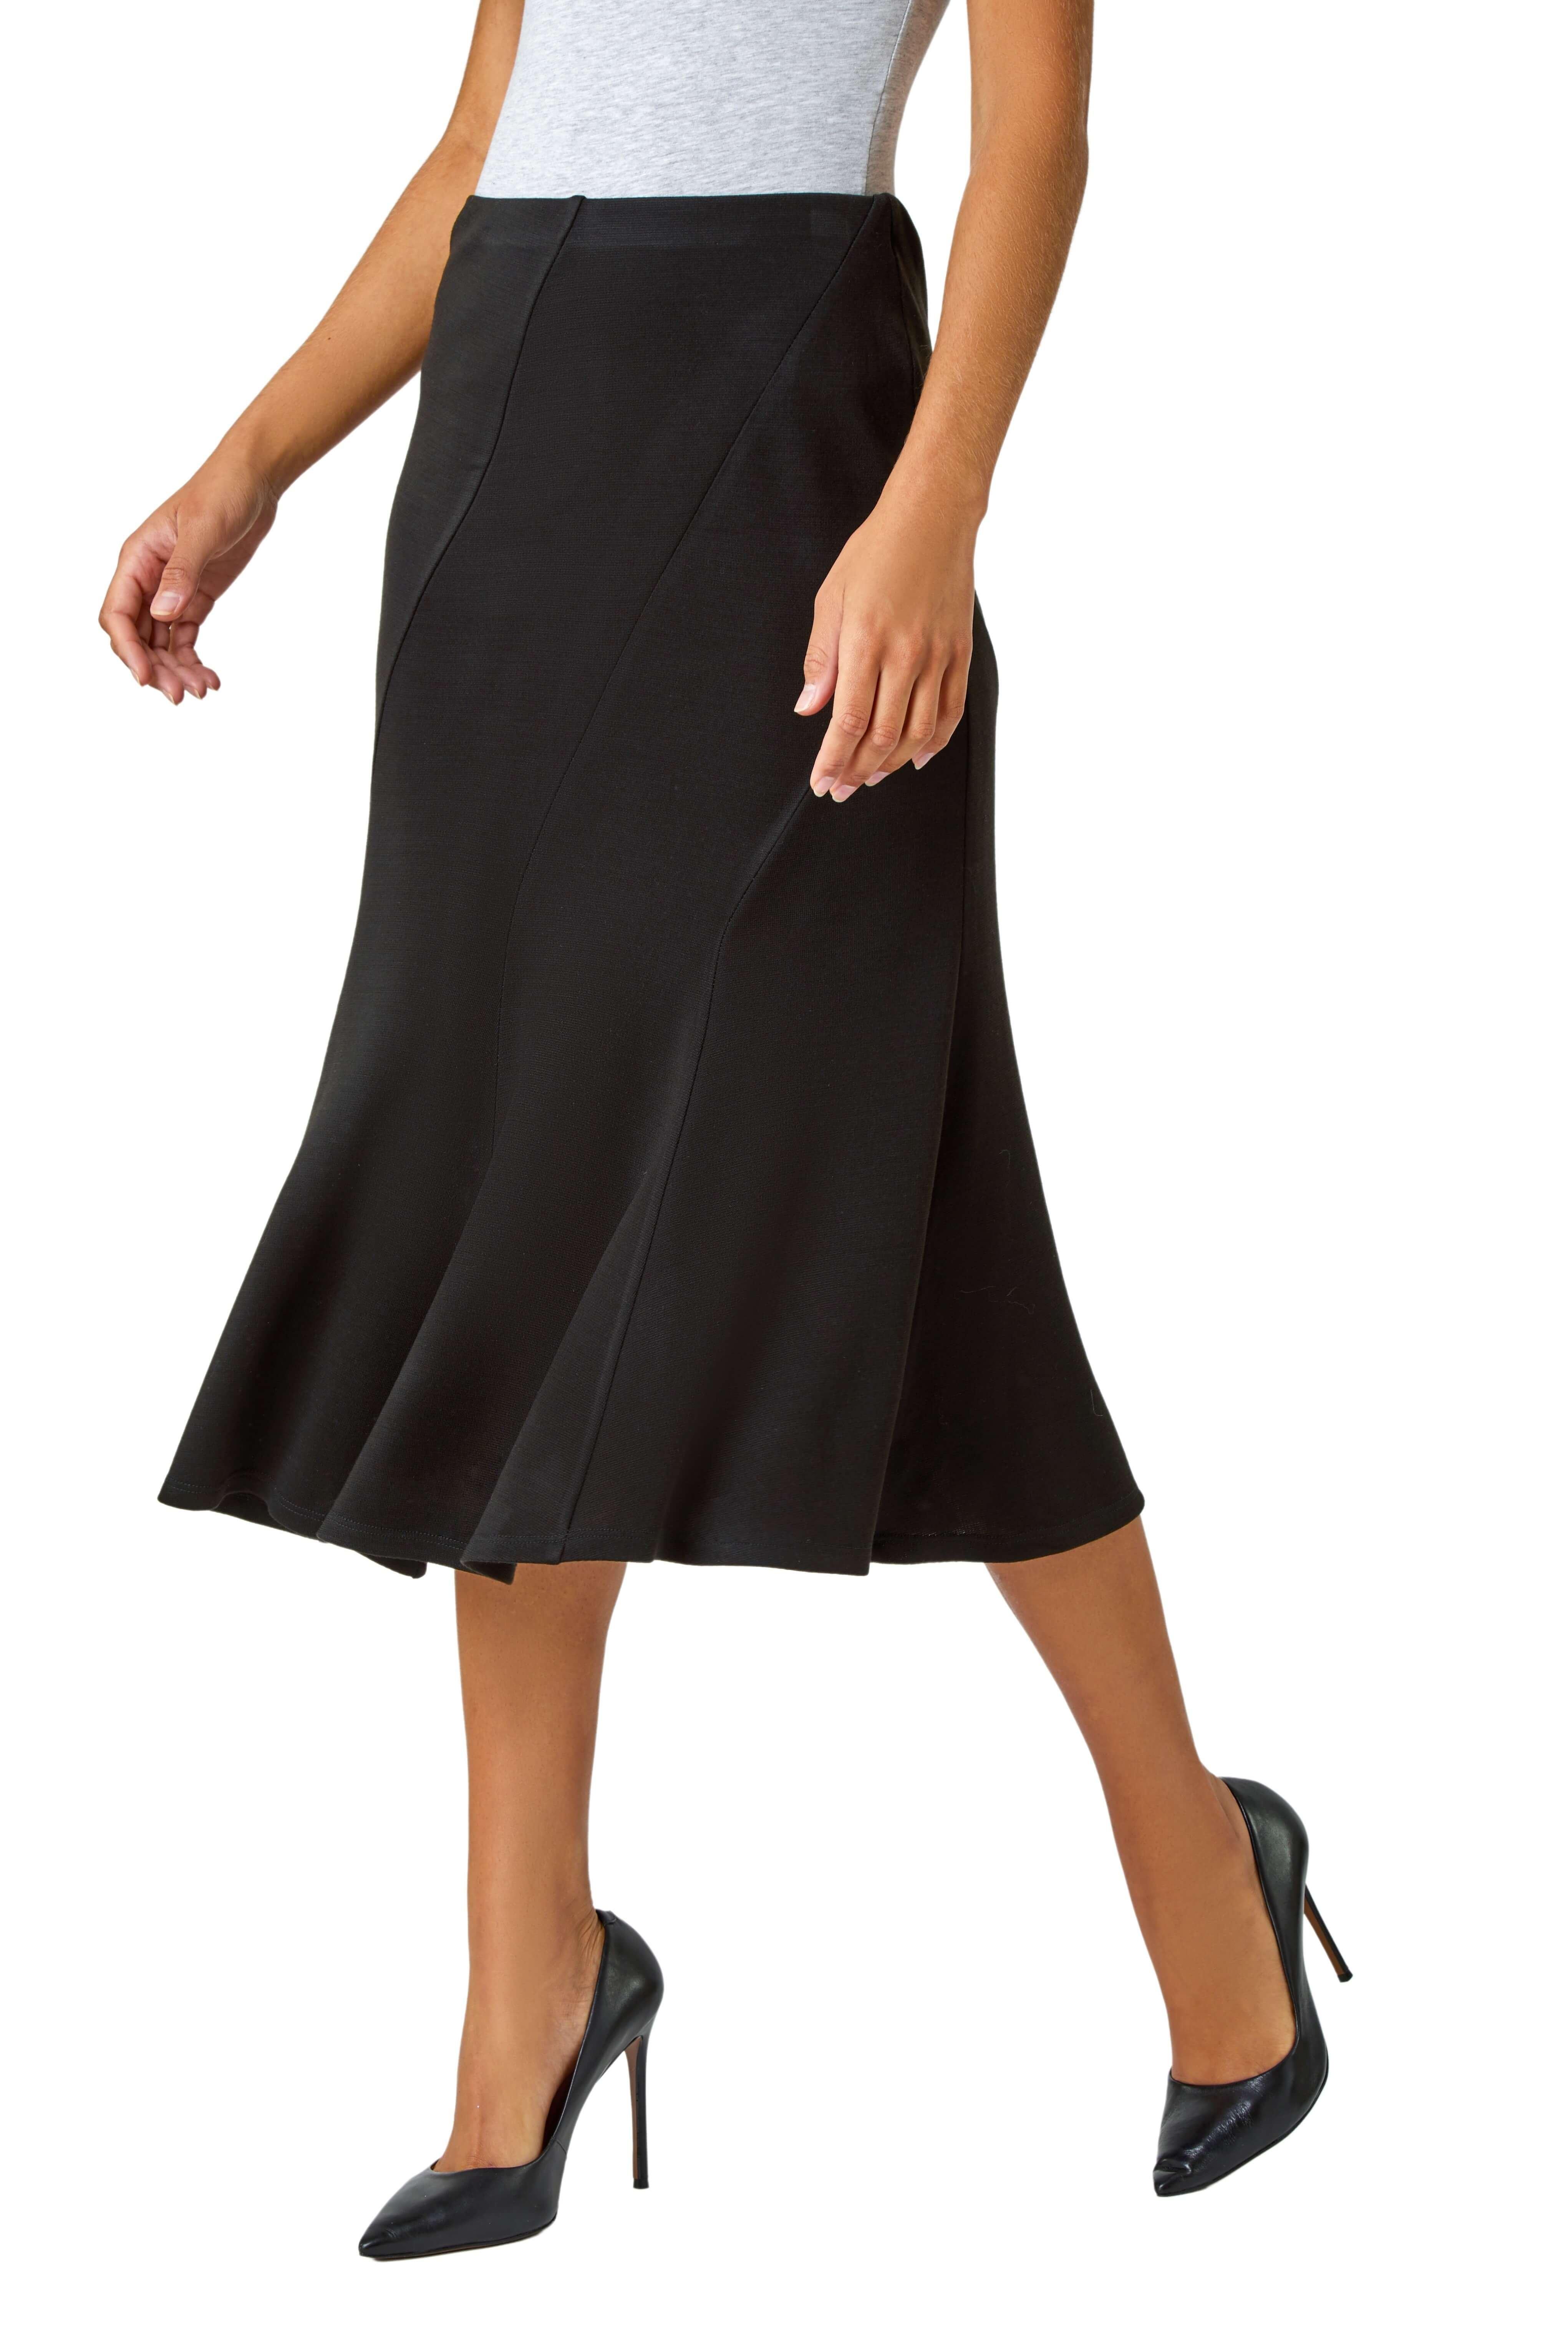 Расклешенная эластичная юбка миди со вставками Roman, черный юбка миди расклешенная из трикотажа 46 fr 52 rus красный